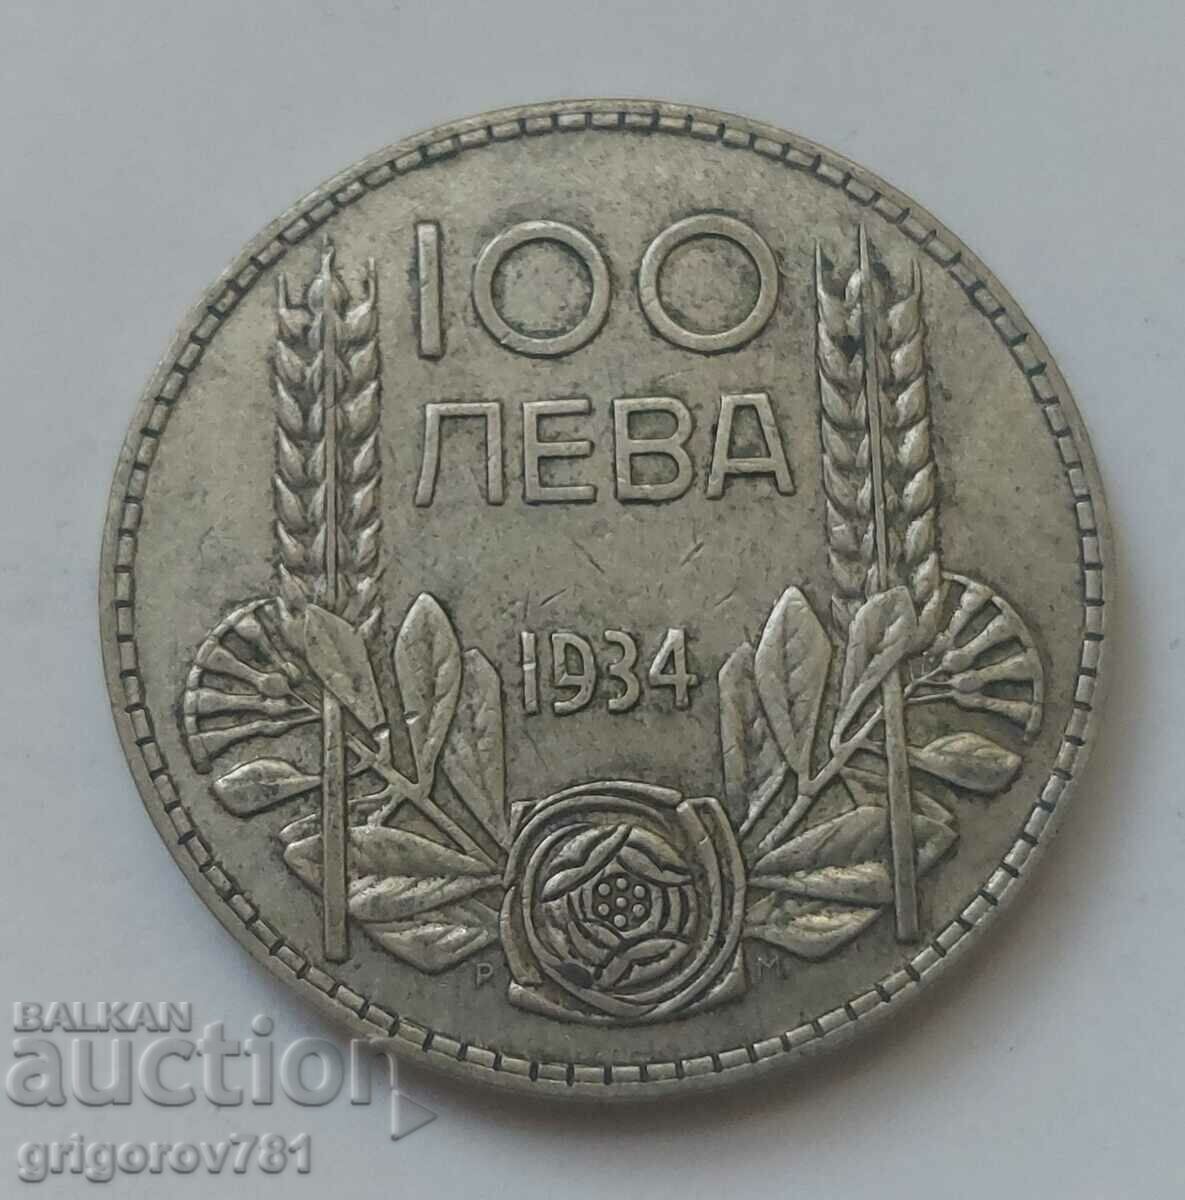 Ασήμι 100 λέβα Βουλγαρία 1934 - ασημένιο νόμισμα #70